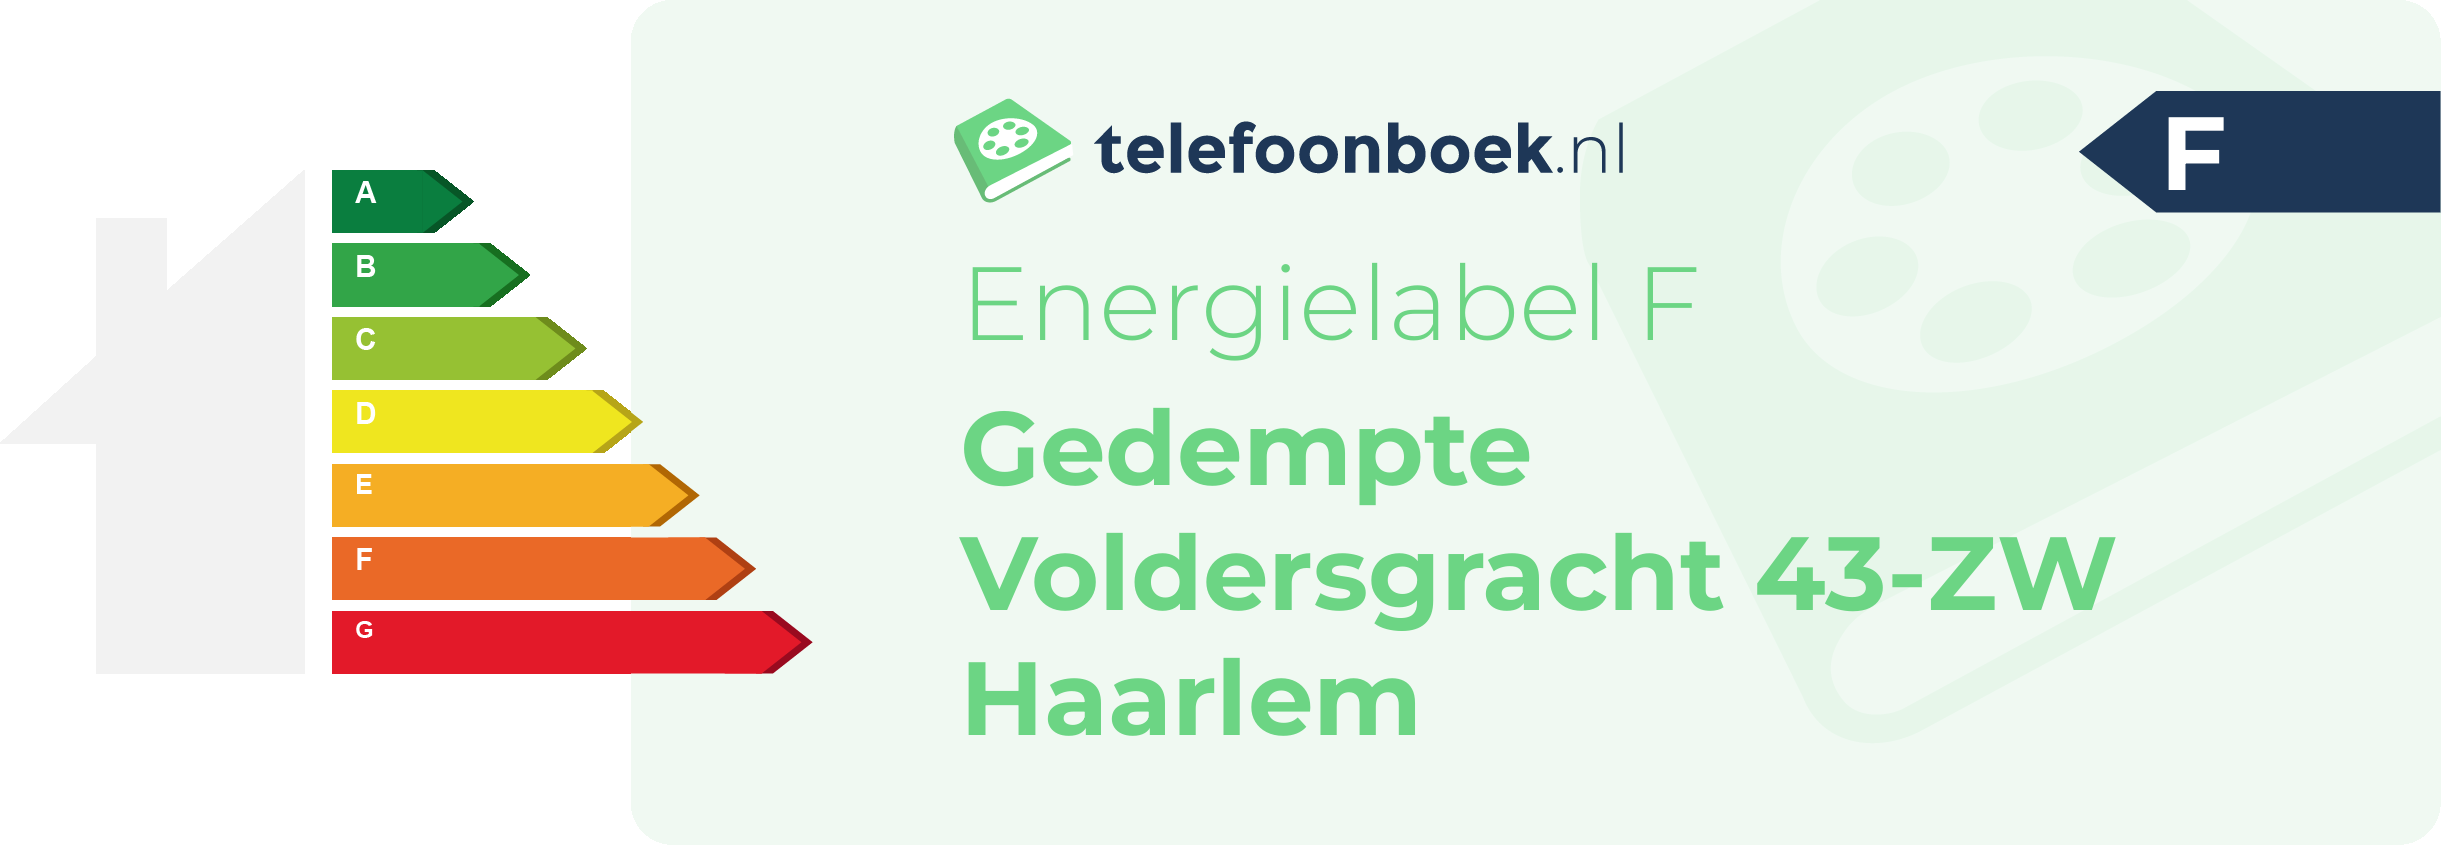 Energielabel Gedempte Voldersgracht 43-ZW Haarlem